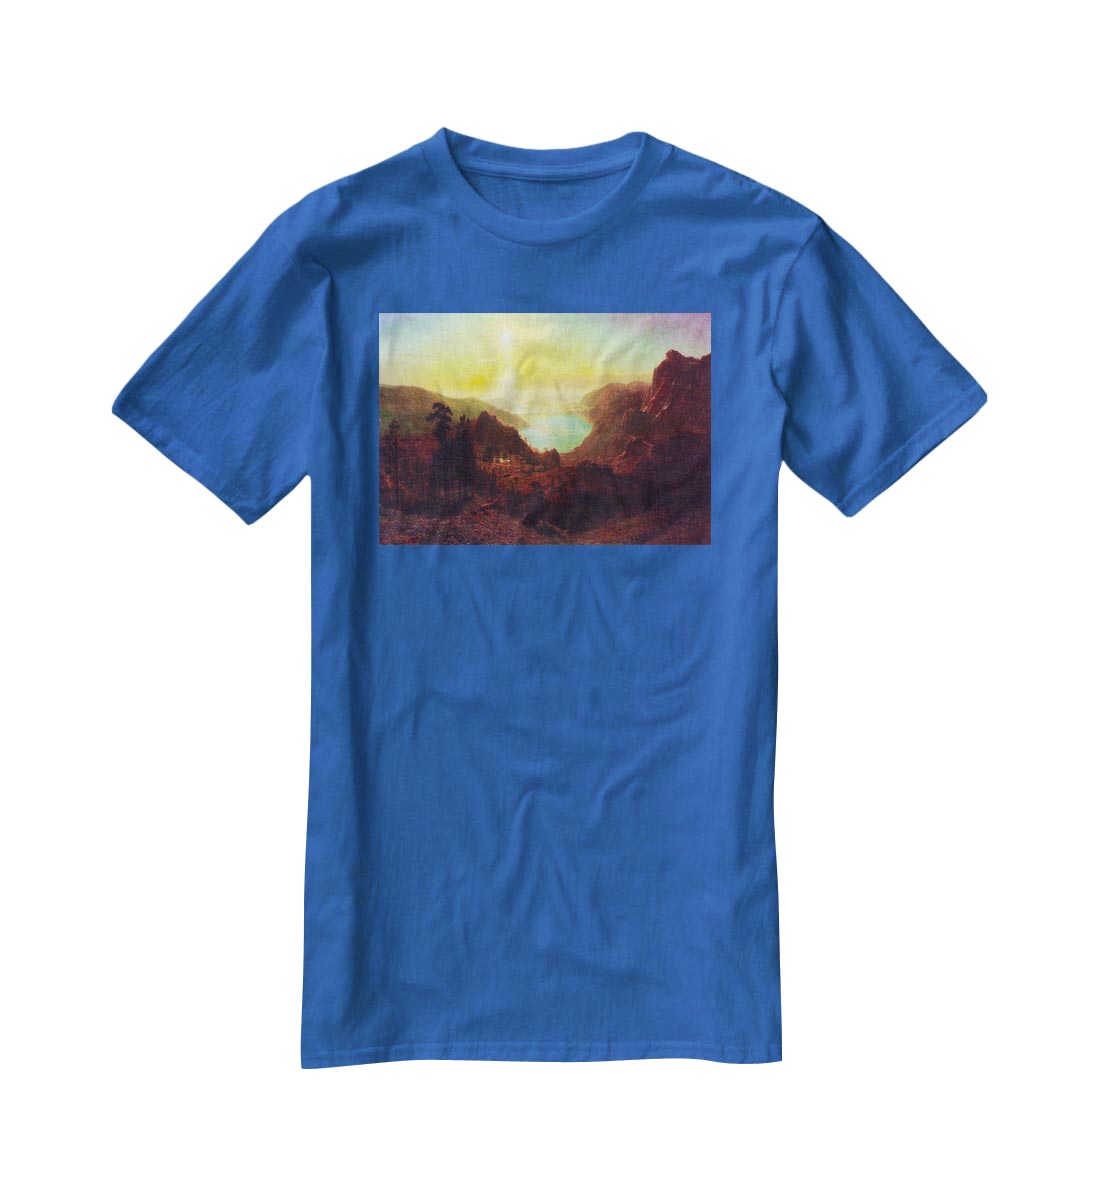 Donner Lake 2 by Bierstadt T-Shirt - Canvas Art Rocks - 2